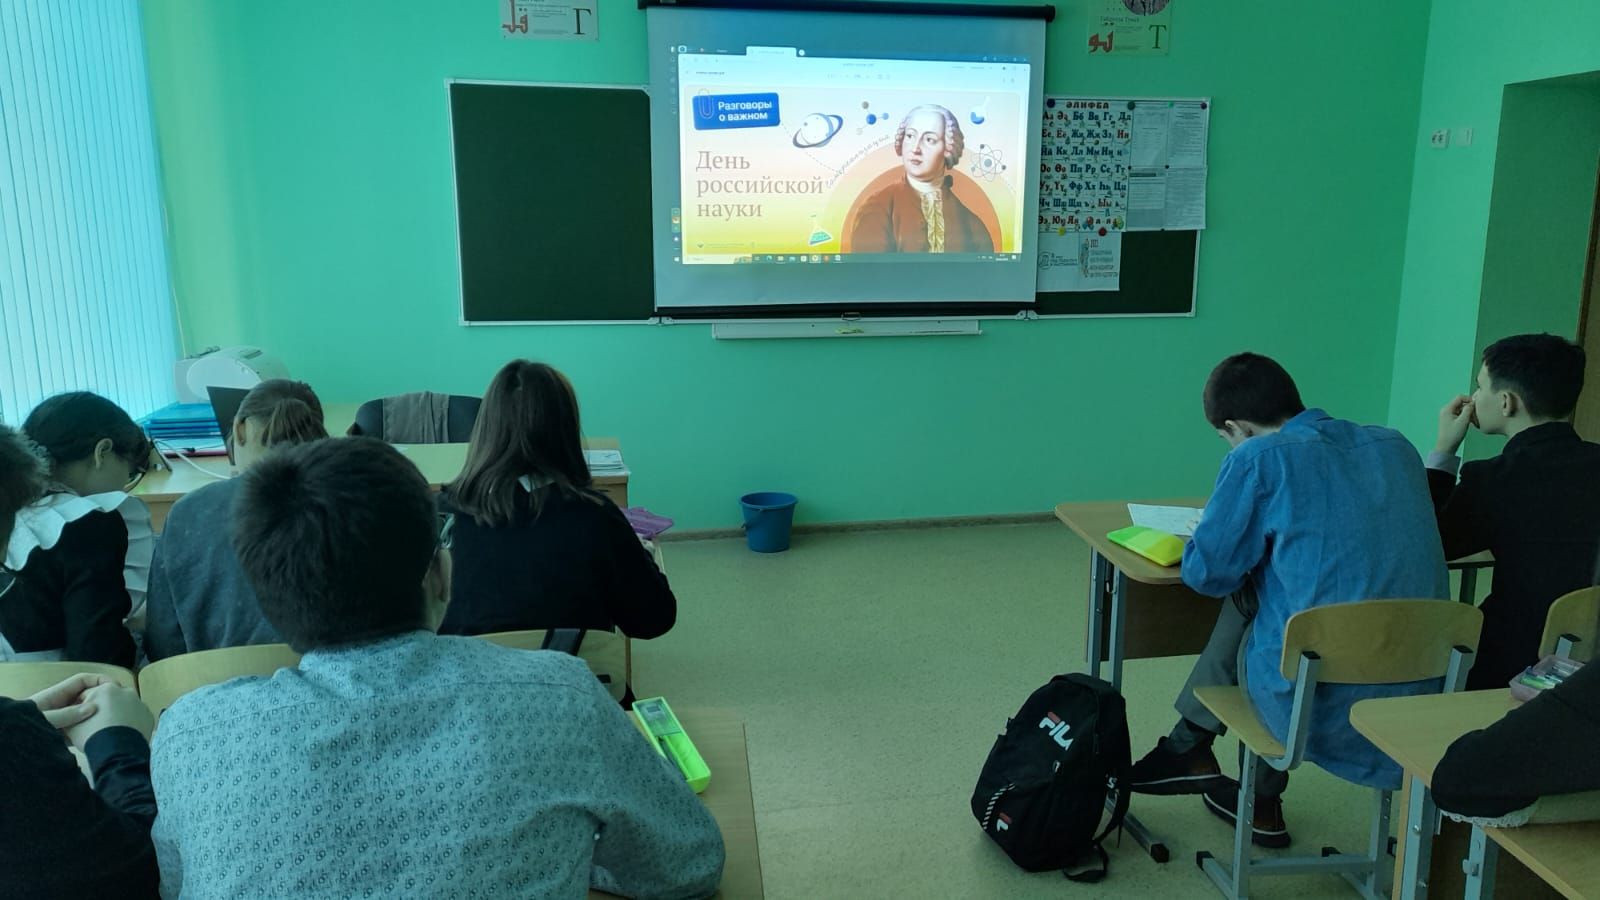 В Азалаковской школе побеседовали о российской науке